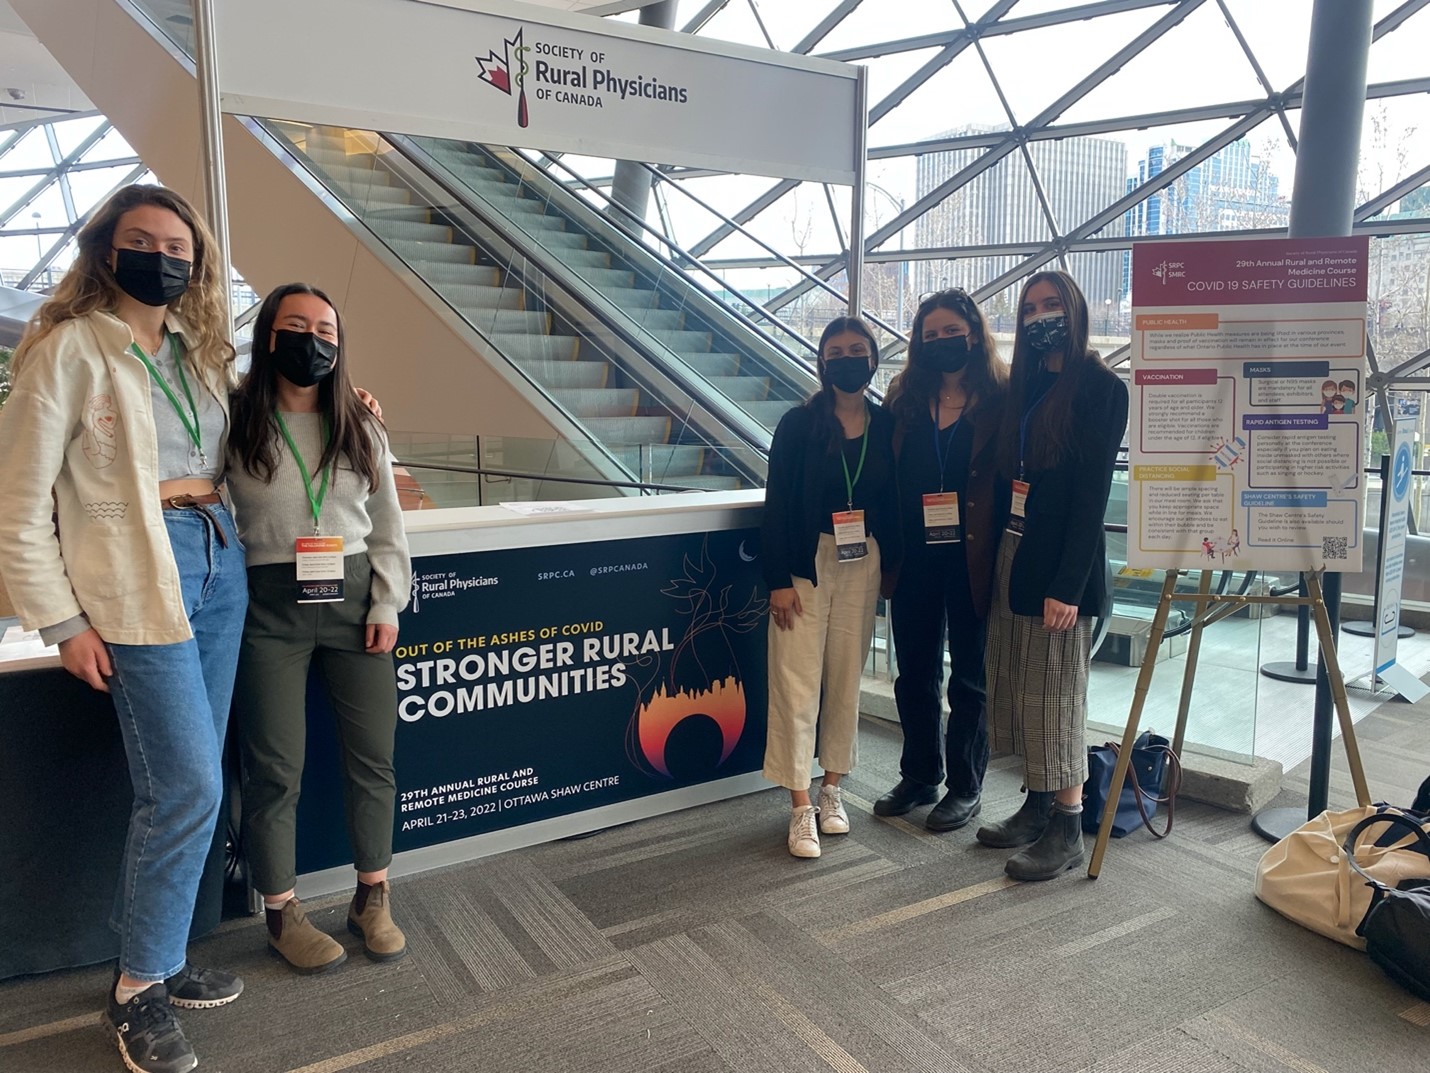 Légende (de gauche à droite) : Montana Blum, Sila Rogan, Maya Venkataraman, Alex Bland et Anna de Waal, lors du congrès de 2022 de la Société de la médecine rurale du Canada, tenu du 21 au 23 avril.  